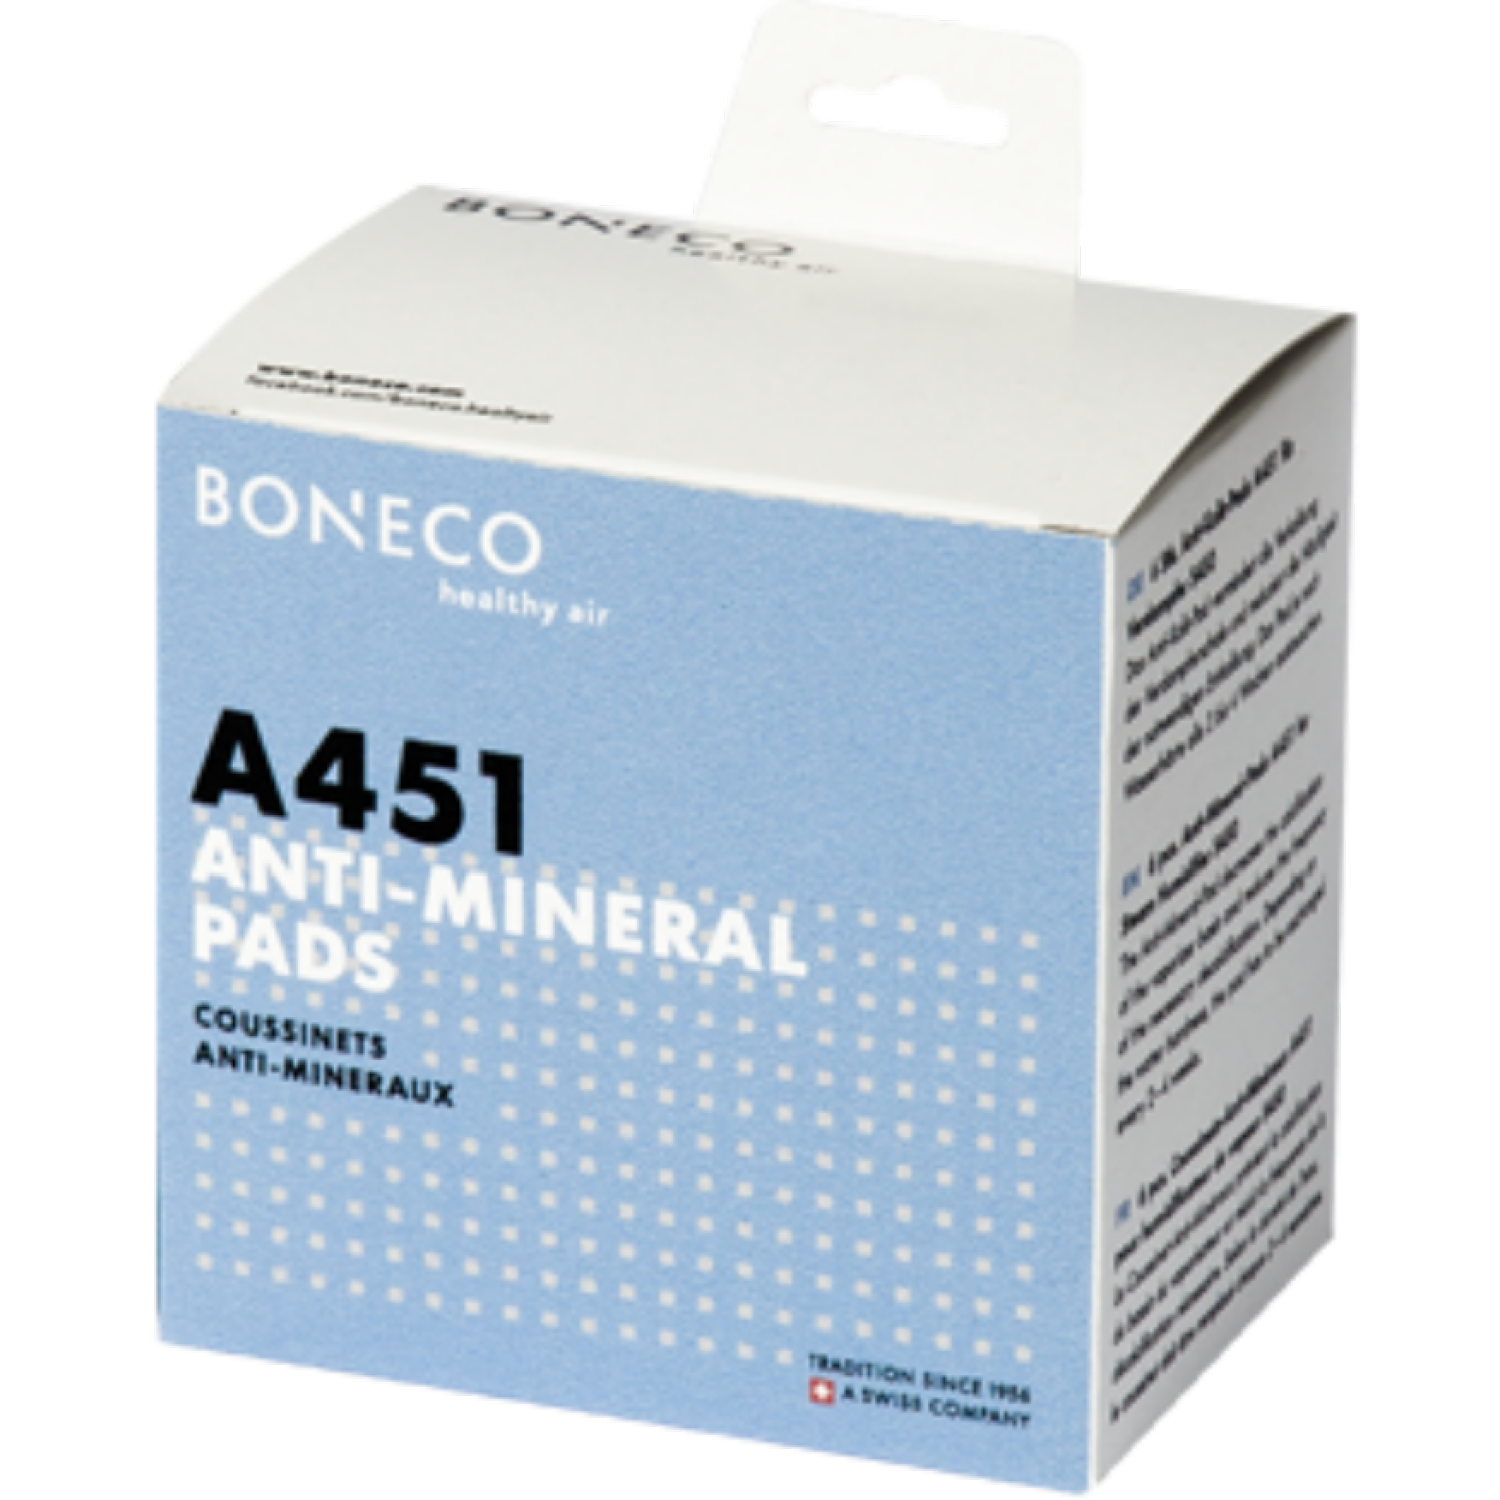 Miếng chống khoáng BONECO A451 giảm vôi hoá trong bình bay hơi, giảm tần xuất hiện tượng canxi hoá cho máy phun sương tạo độ ẩm S450 -Healthy Air